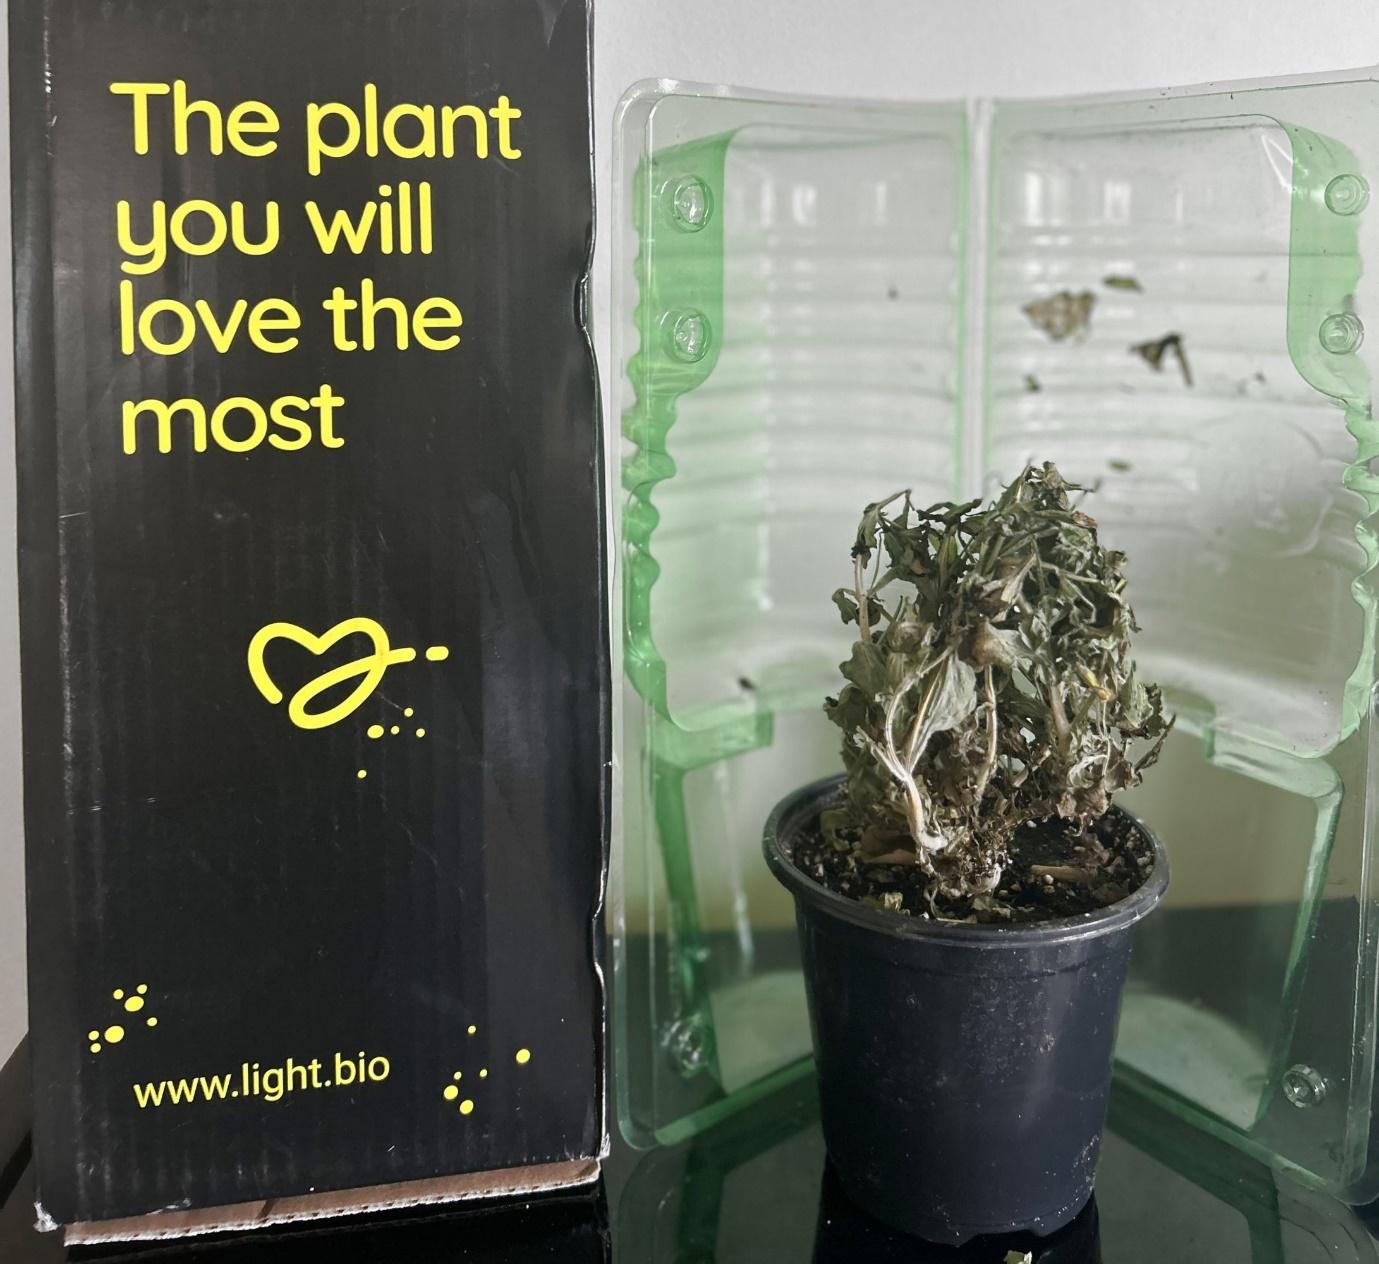 텍스트, 실내용 화초, 화분, 식물이(가) 표시된 사진  자동 생성된 설명